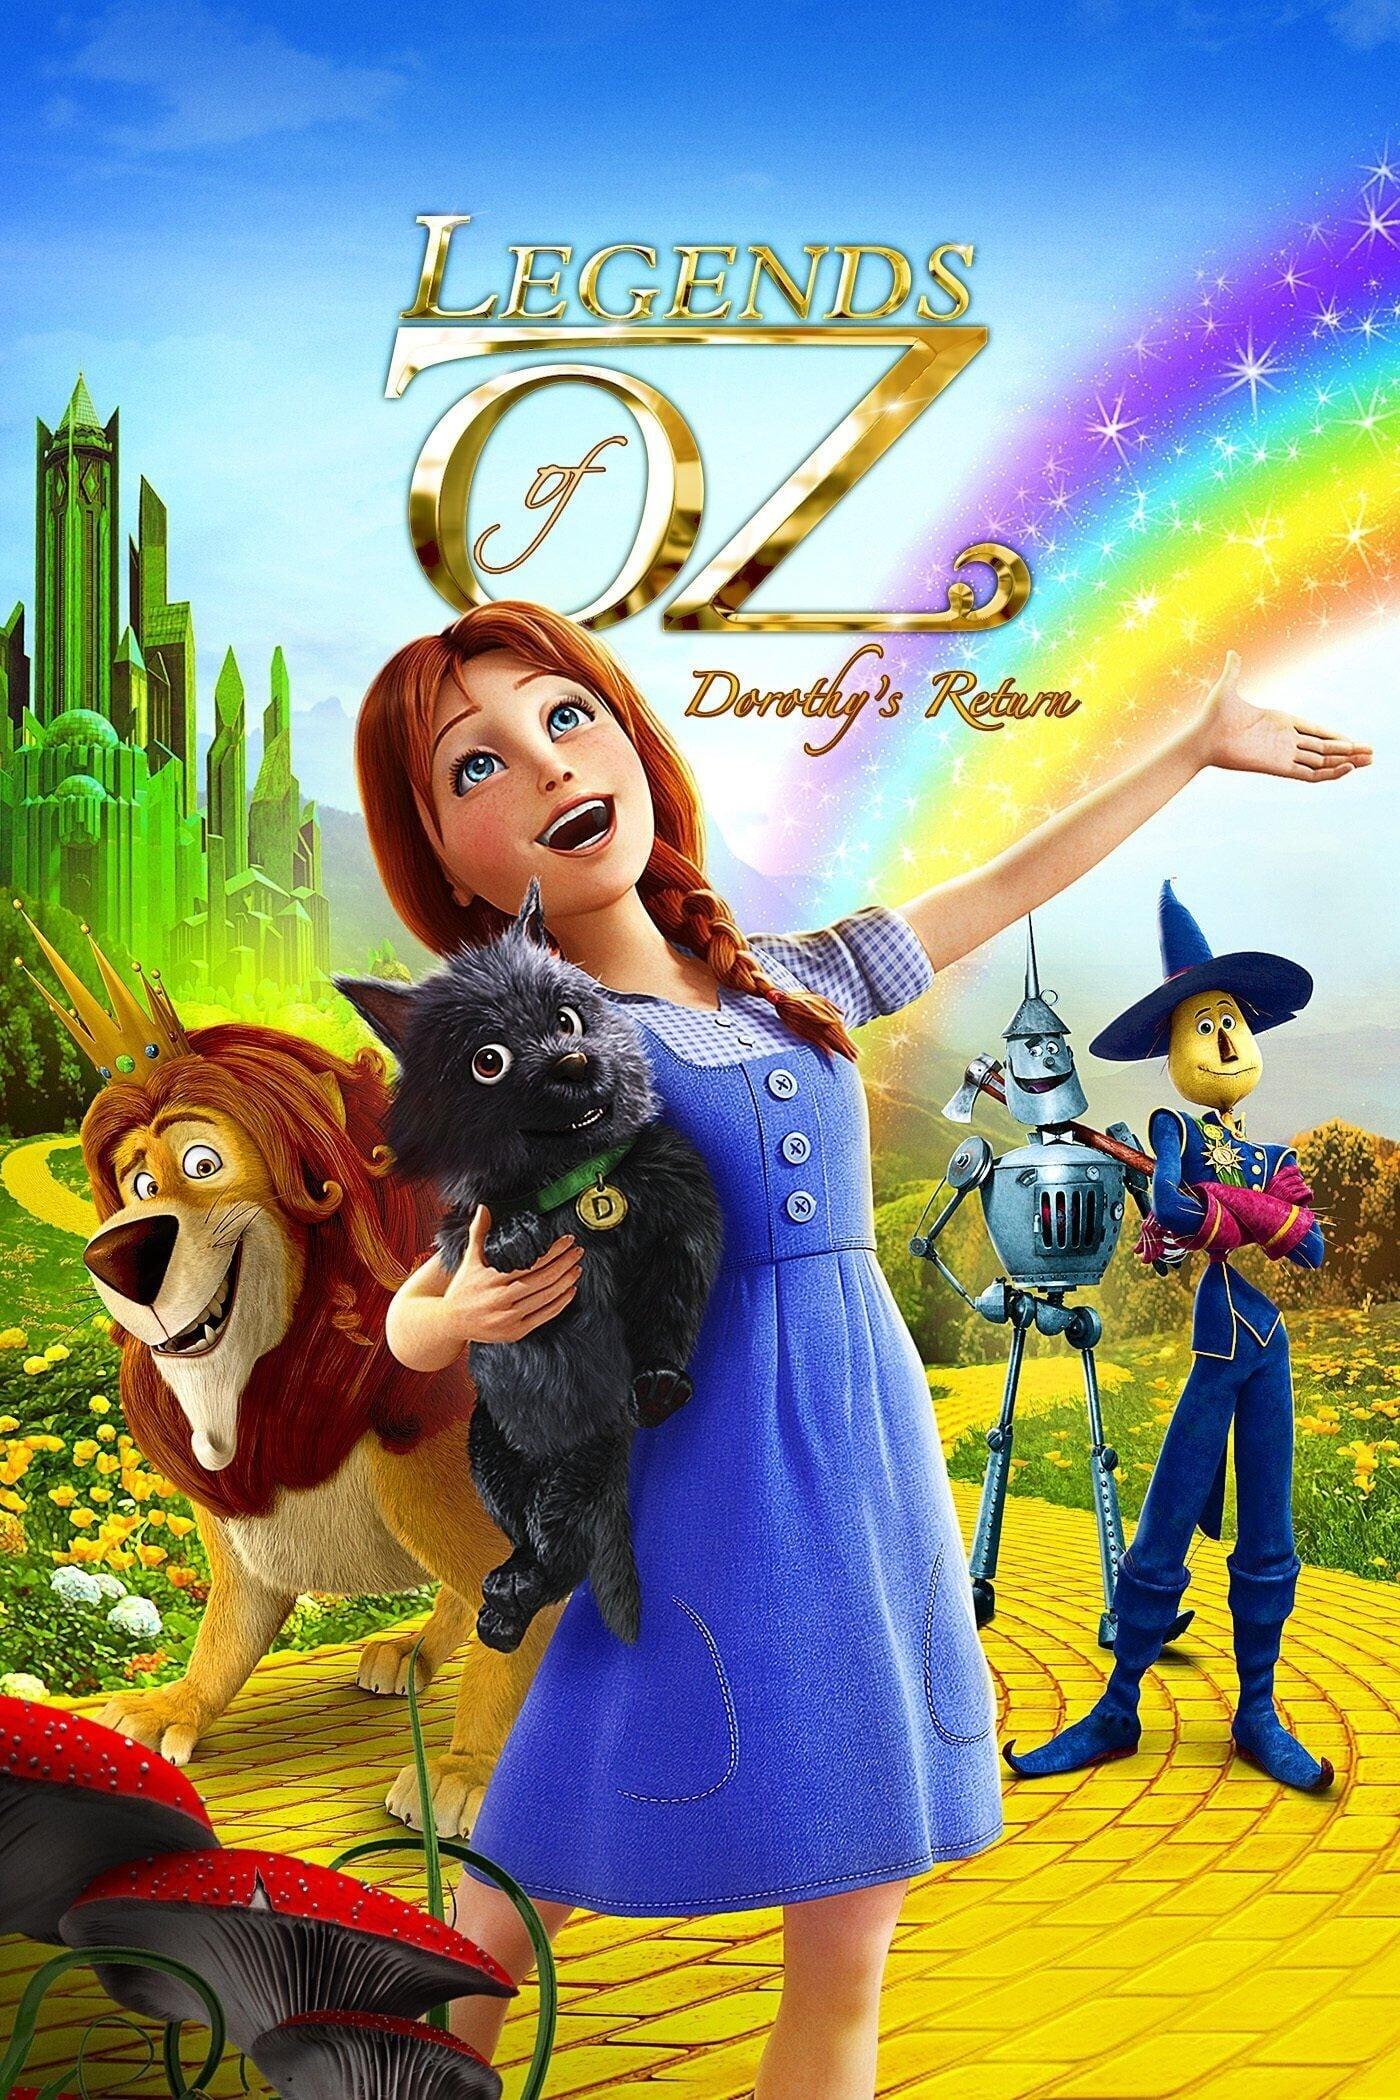 Die Legende von Oz - Dorothys Rückkehr poster